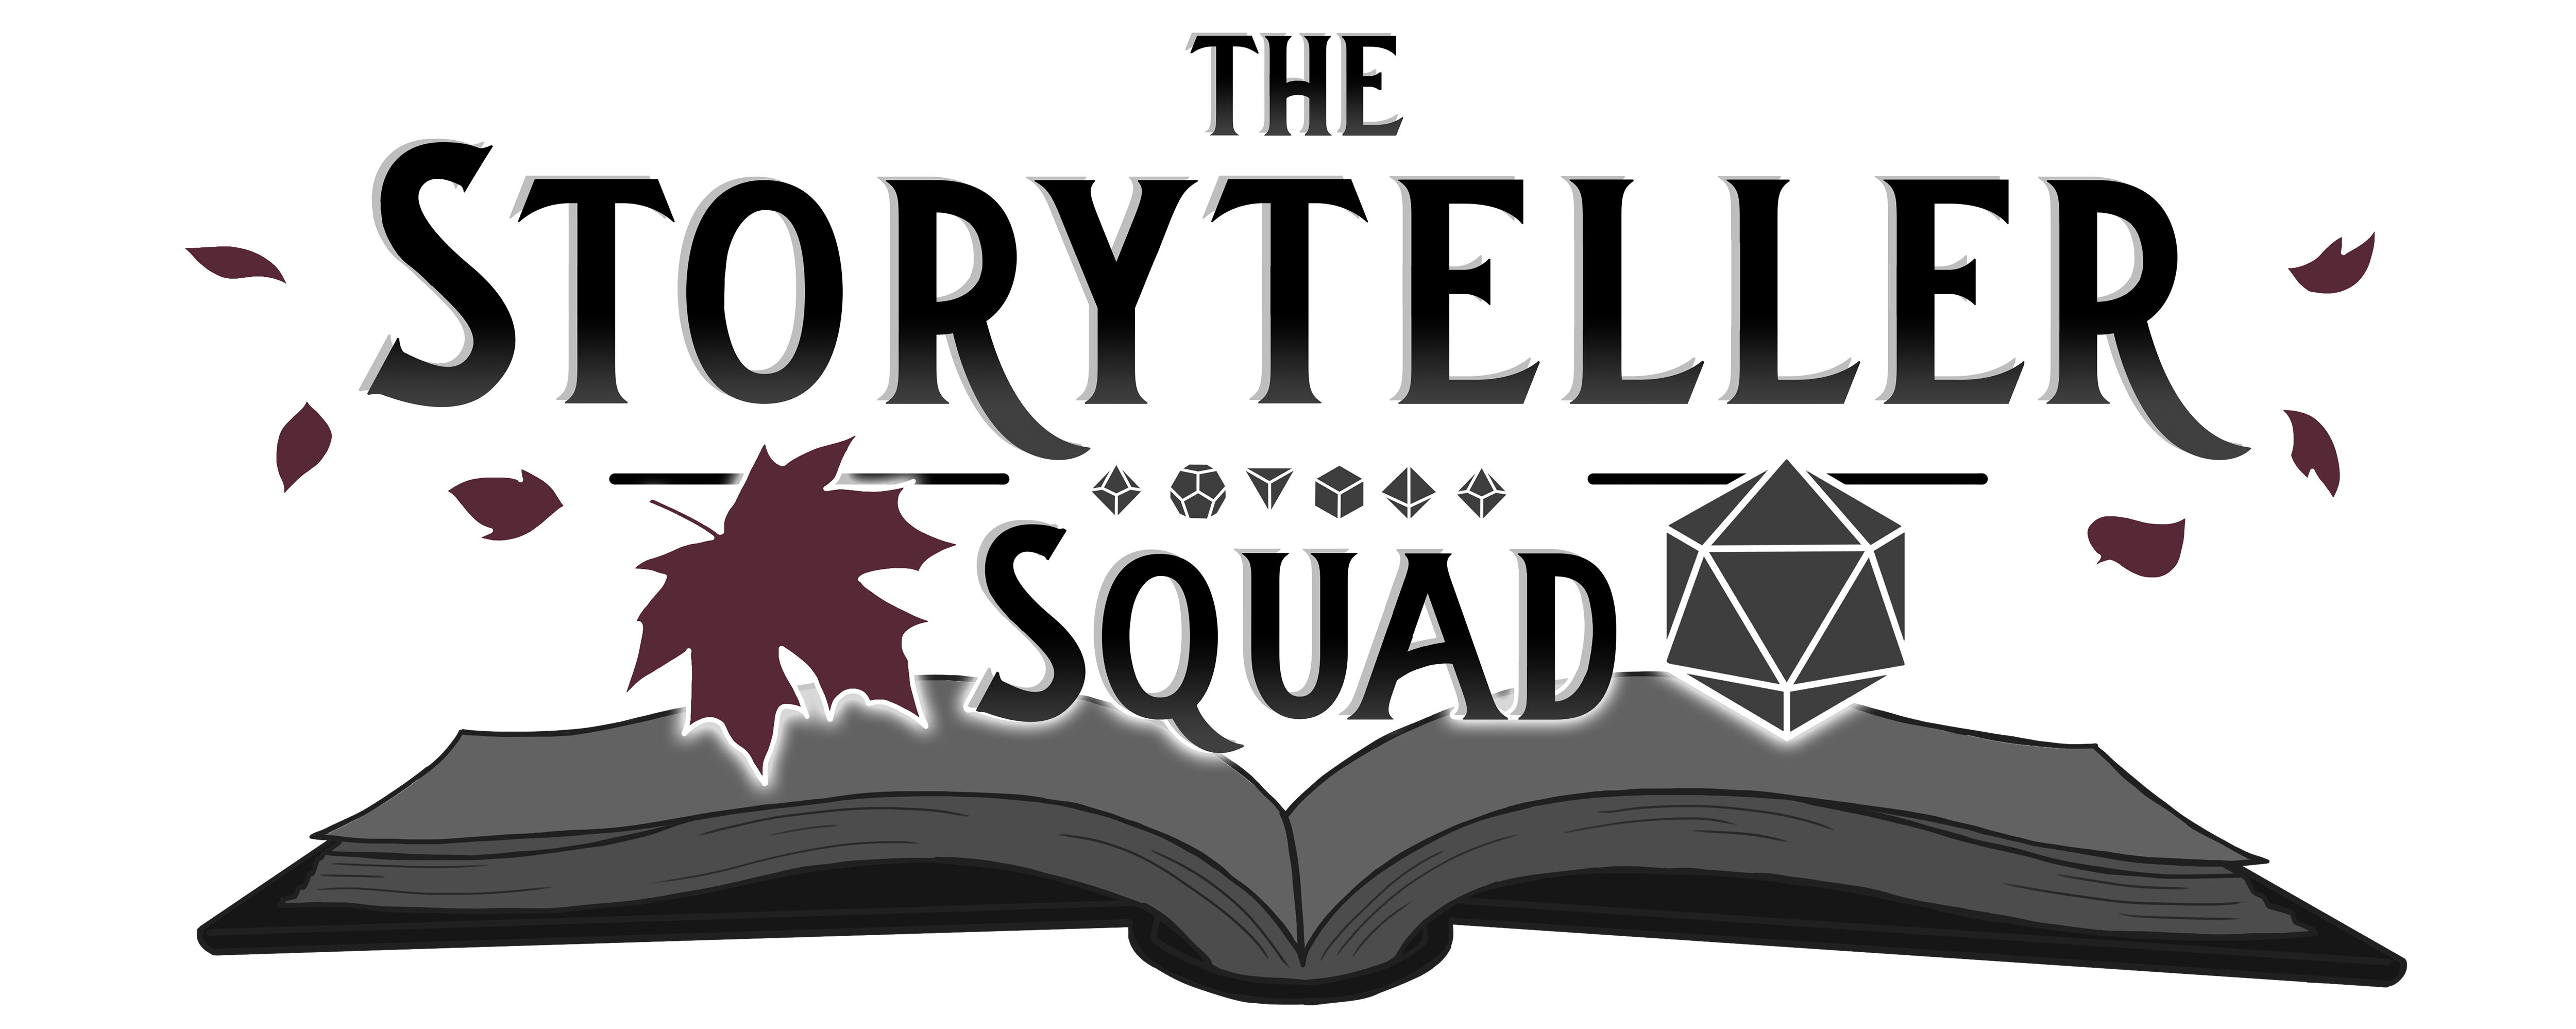 The Storyteller Squad